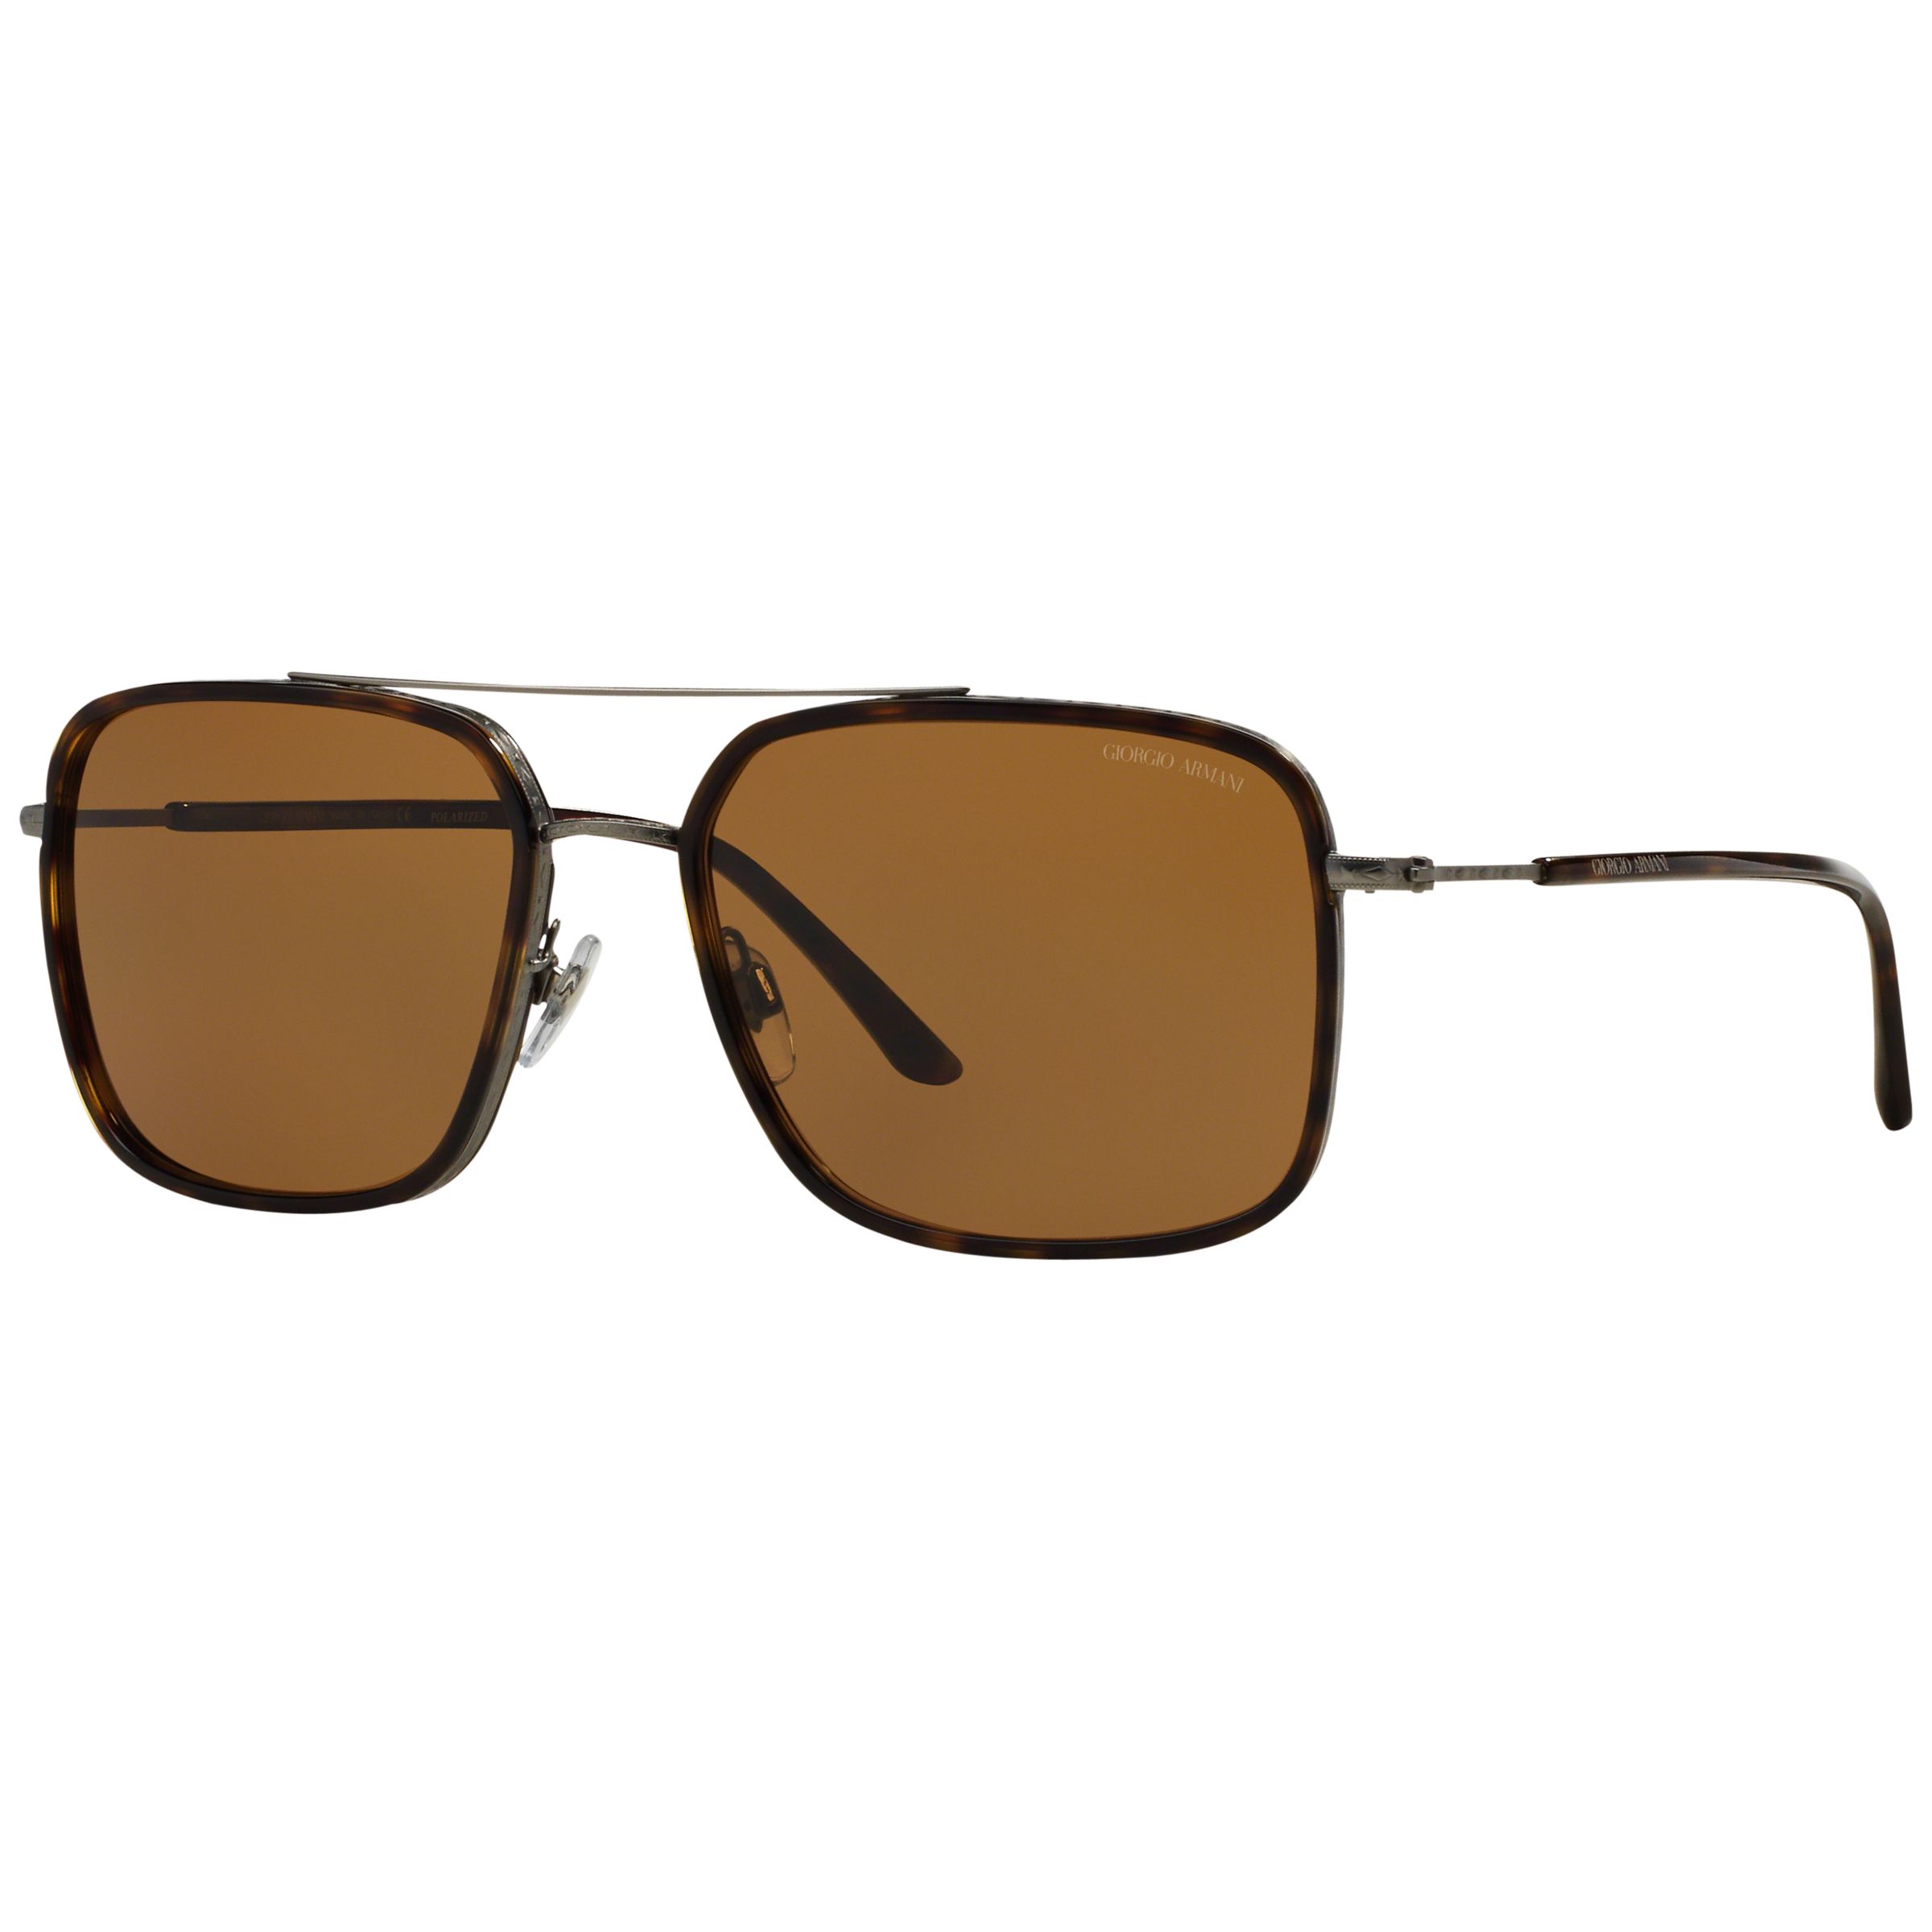 Giorgio Armani AR6031 Square Sunglasses, Brown